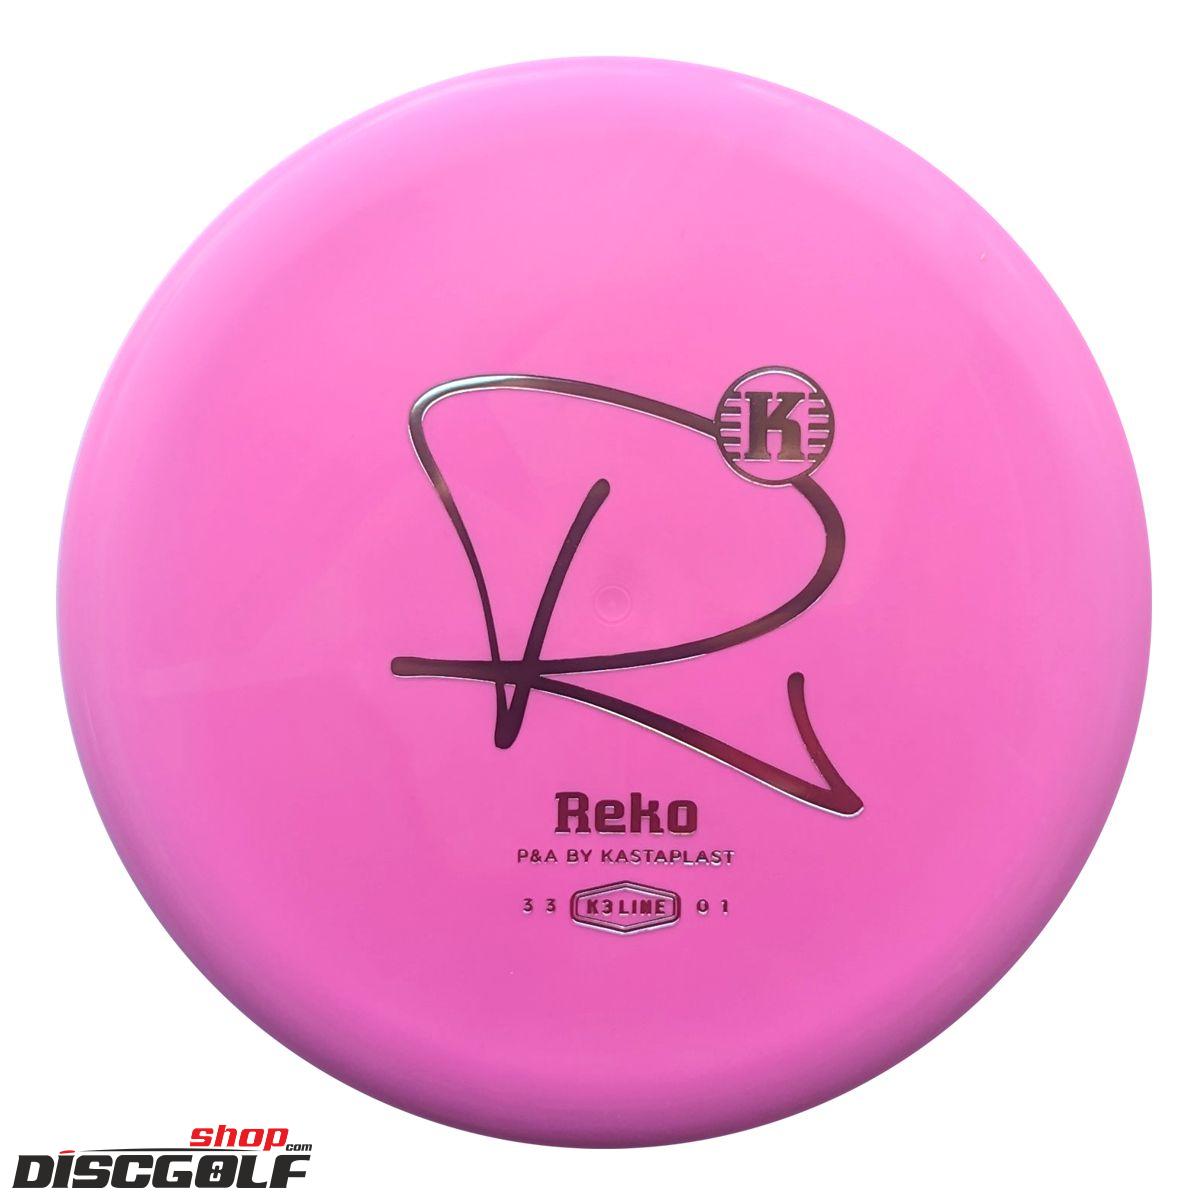 Kastaplast Reko K3 (discgolf)